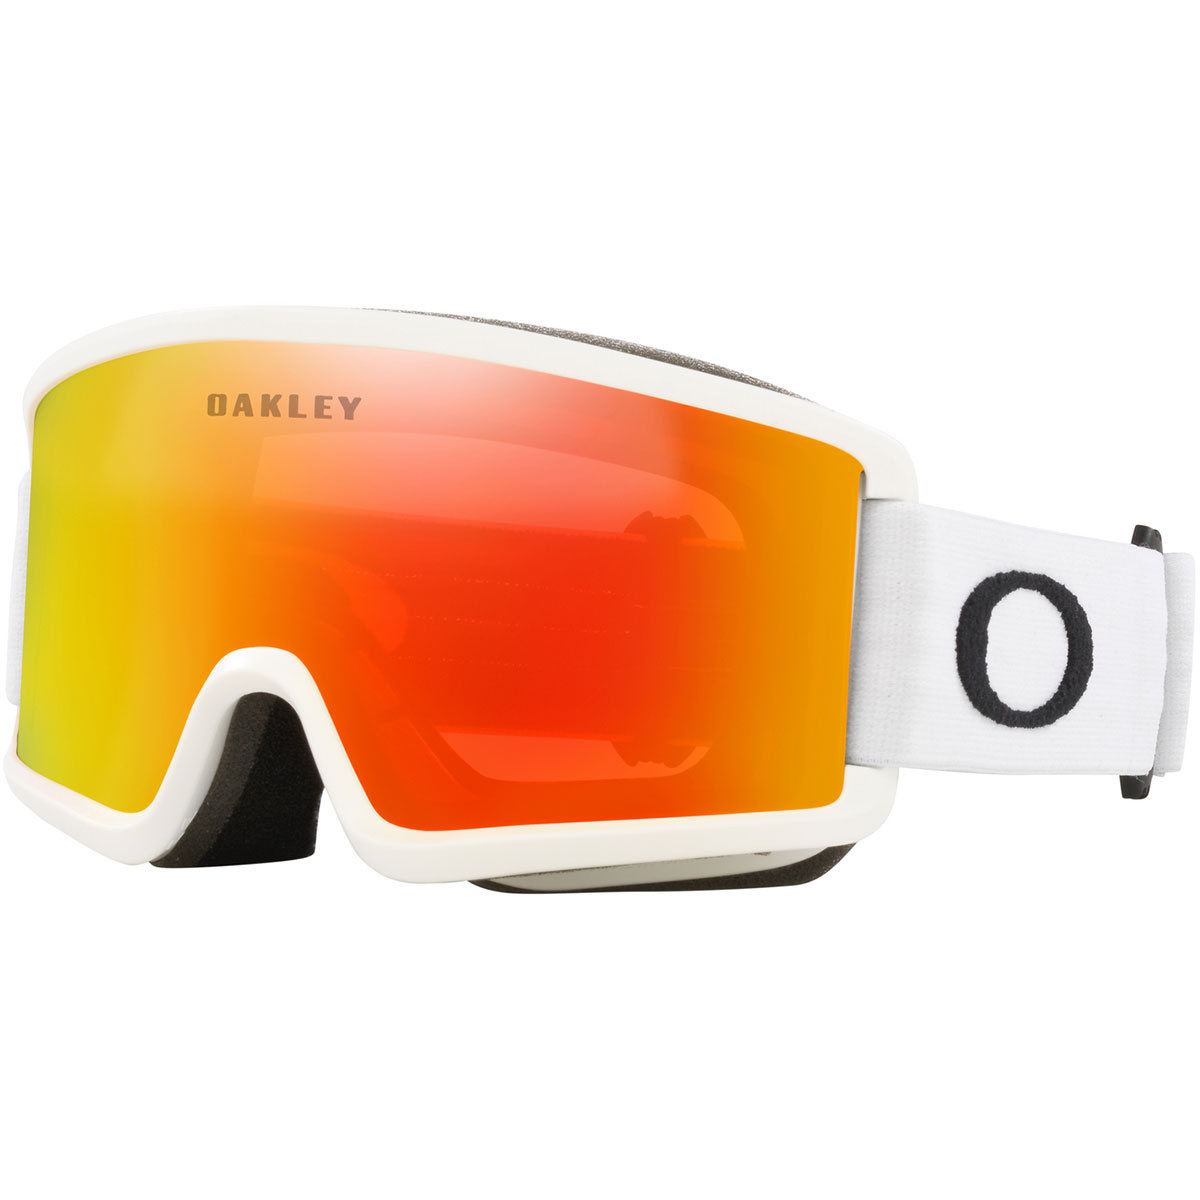 Oakley Target Line S Skibrille von Oakley